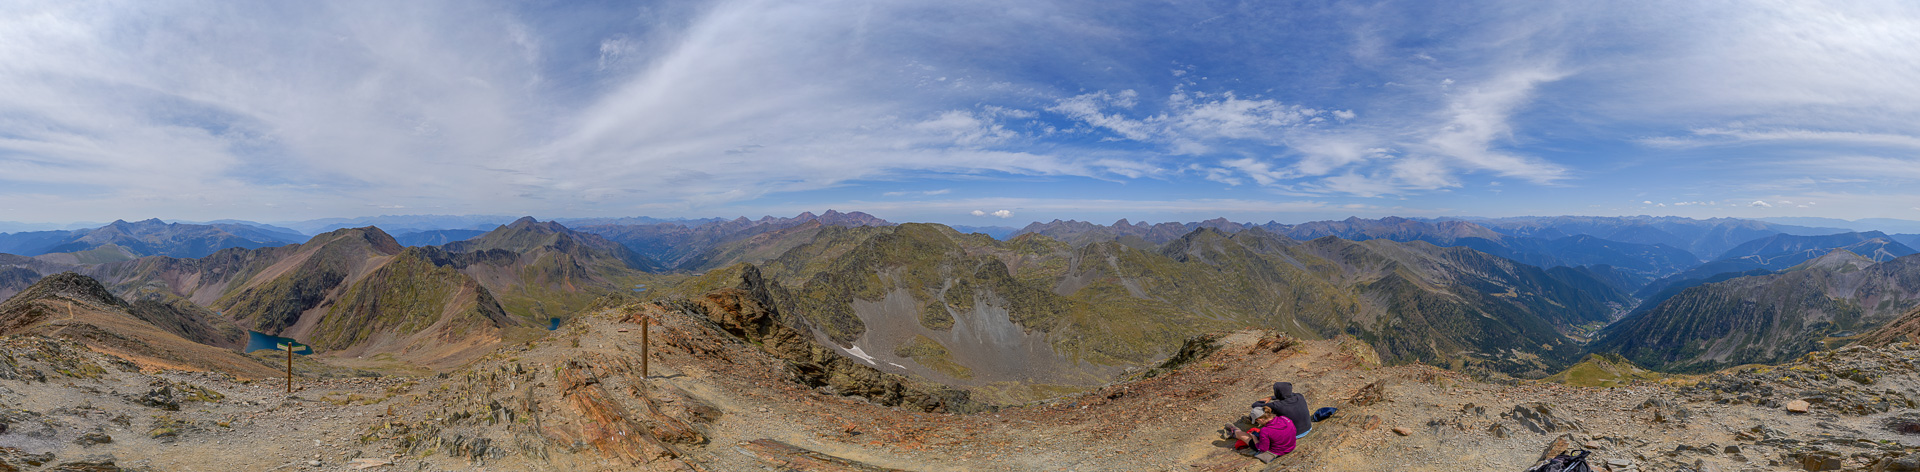 Der Blick geht weit über die andorranischen Berge hinaus bis zum Aneto.